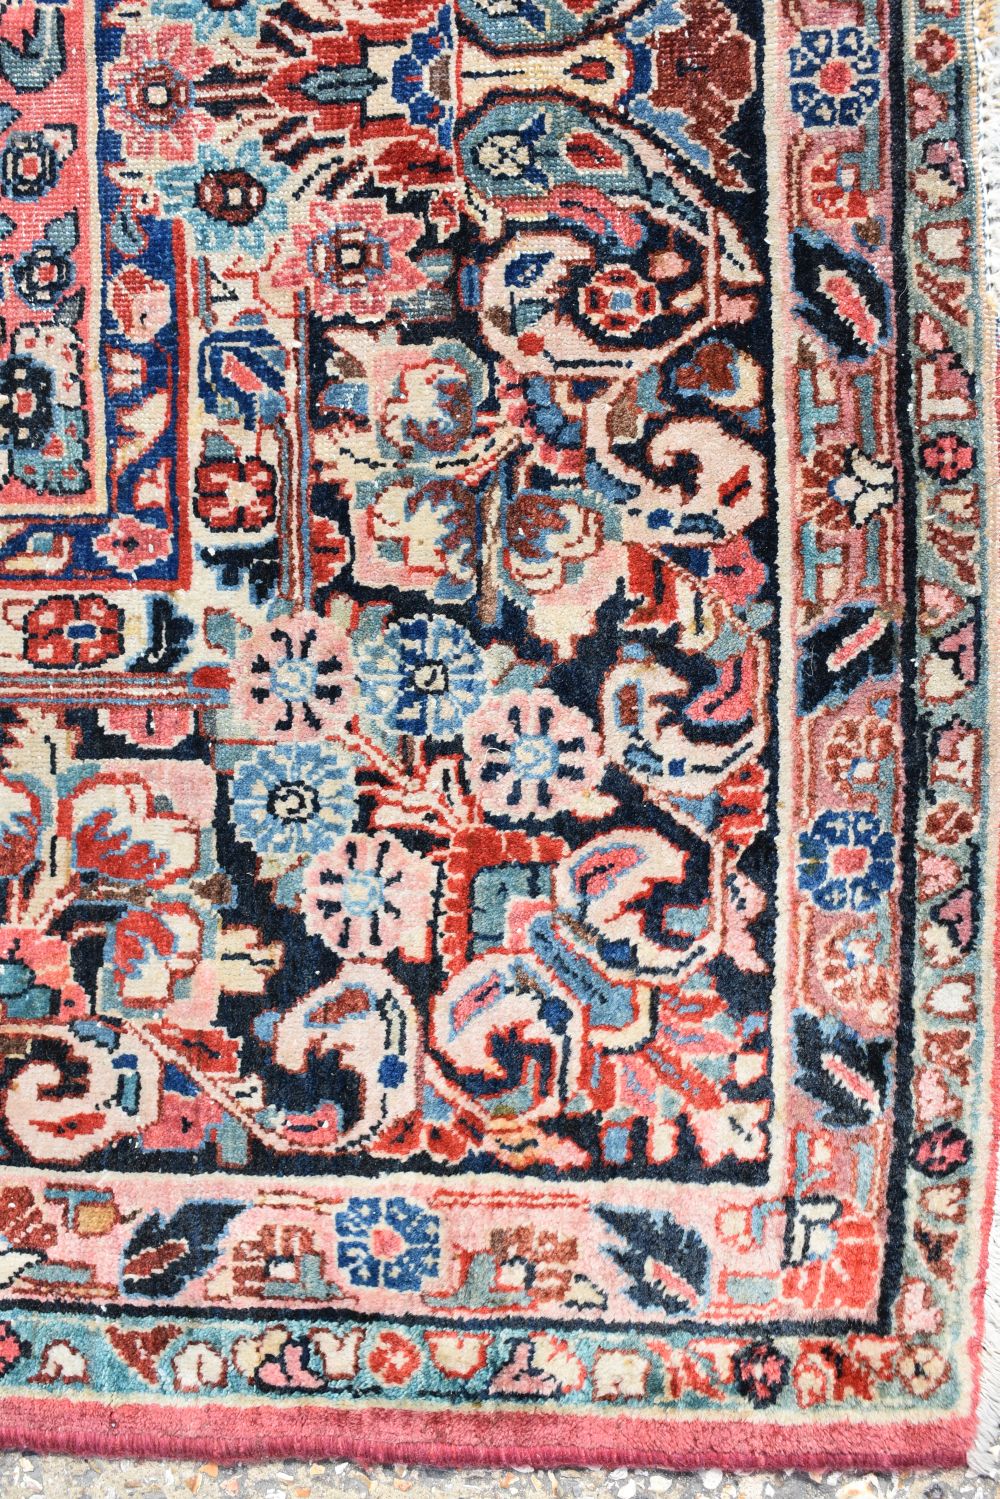 A Persian Sarouk rug 367 x 267 cm - Image 11 of 18